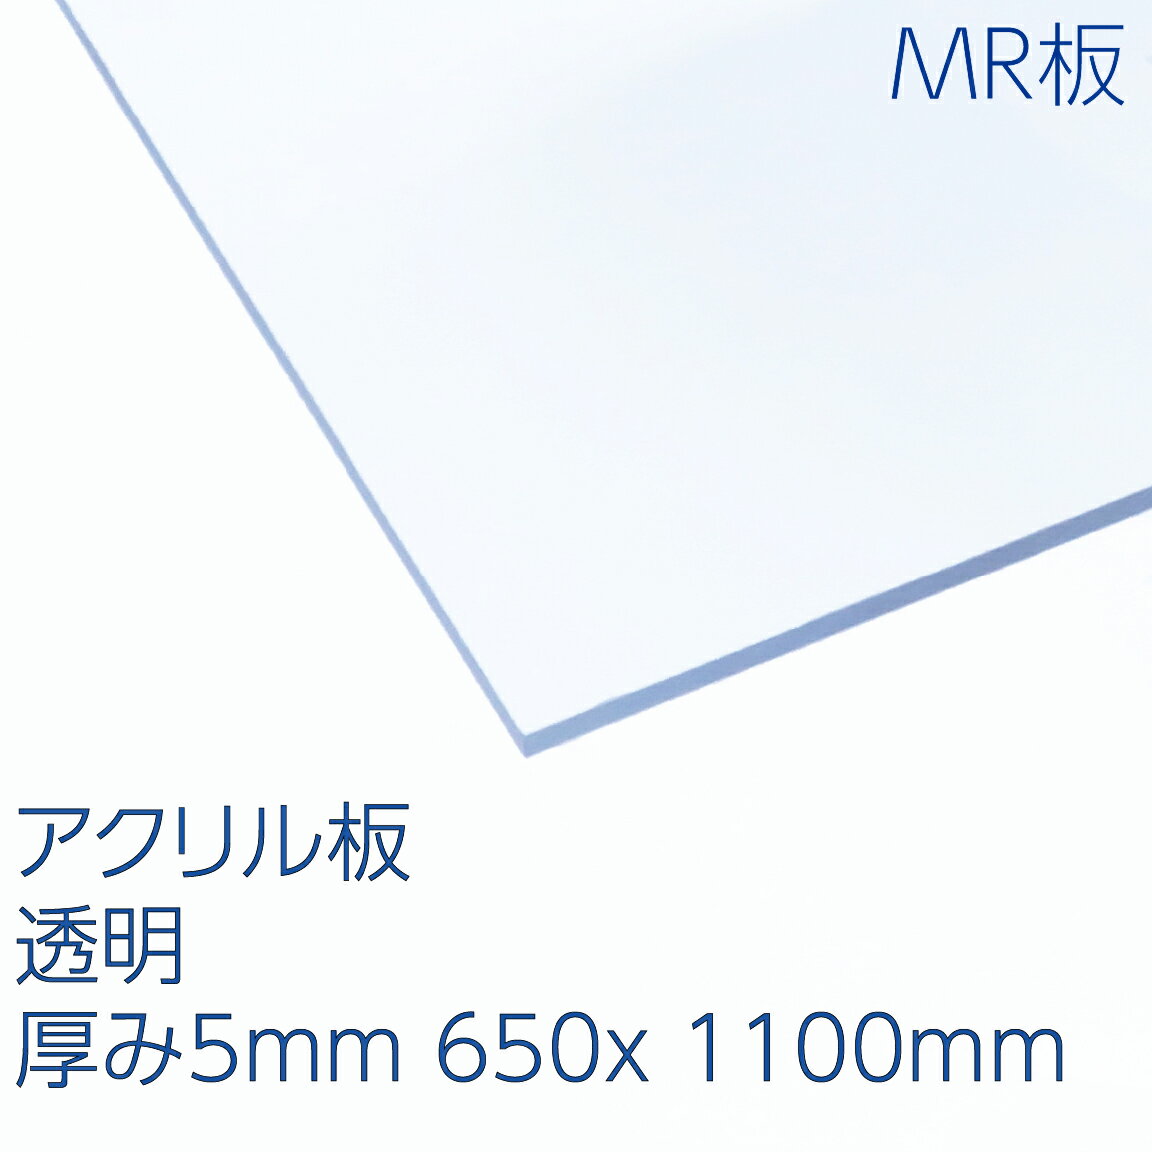 アクリサンデーMR板 アクリル 透明(MR2-001) 厚み5mm 650×1100mm キャスト板 ハードコート 表面硬化処理 耐擦傷性 天板 パーテーション..